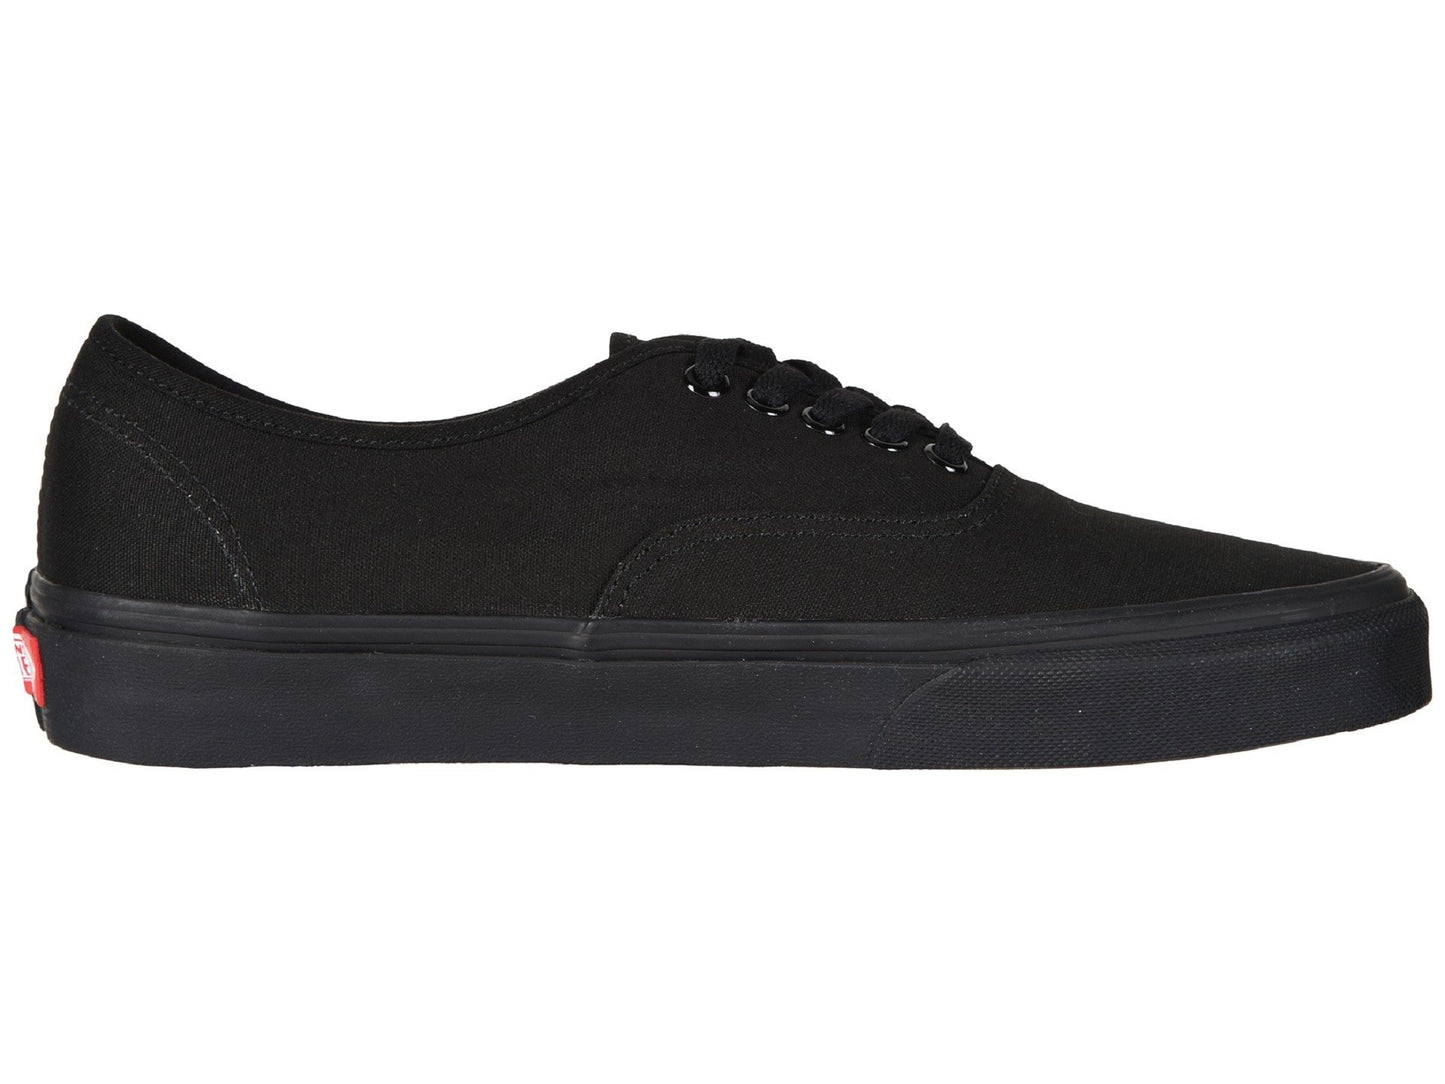 Vans Adult Unisex Authentic Shoes Black / Black